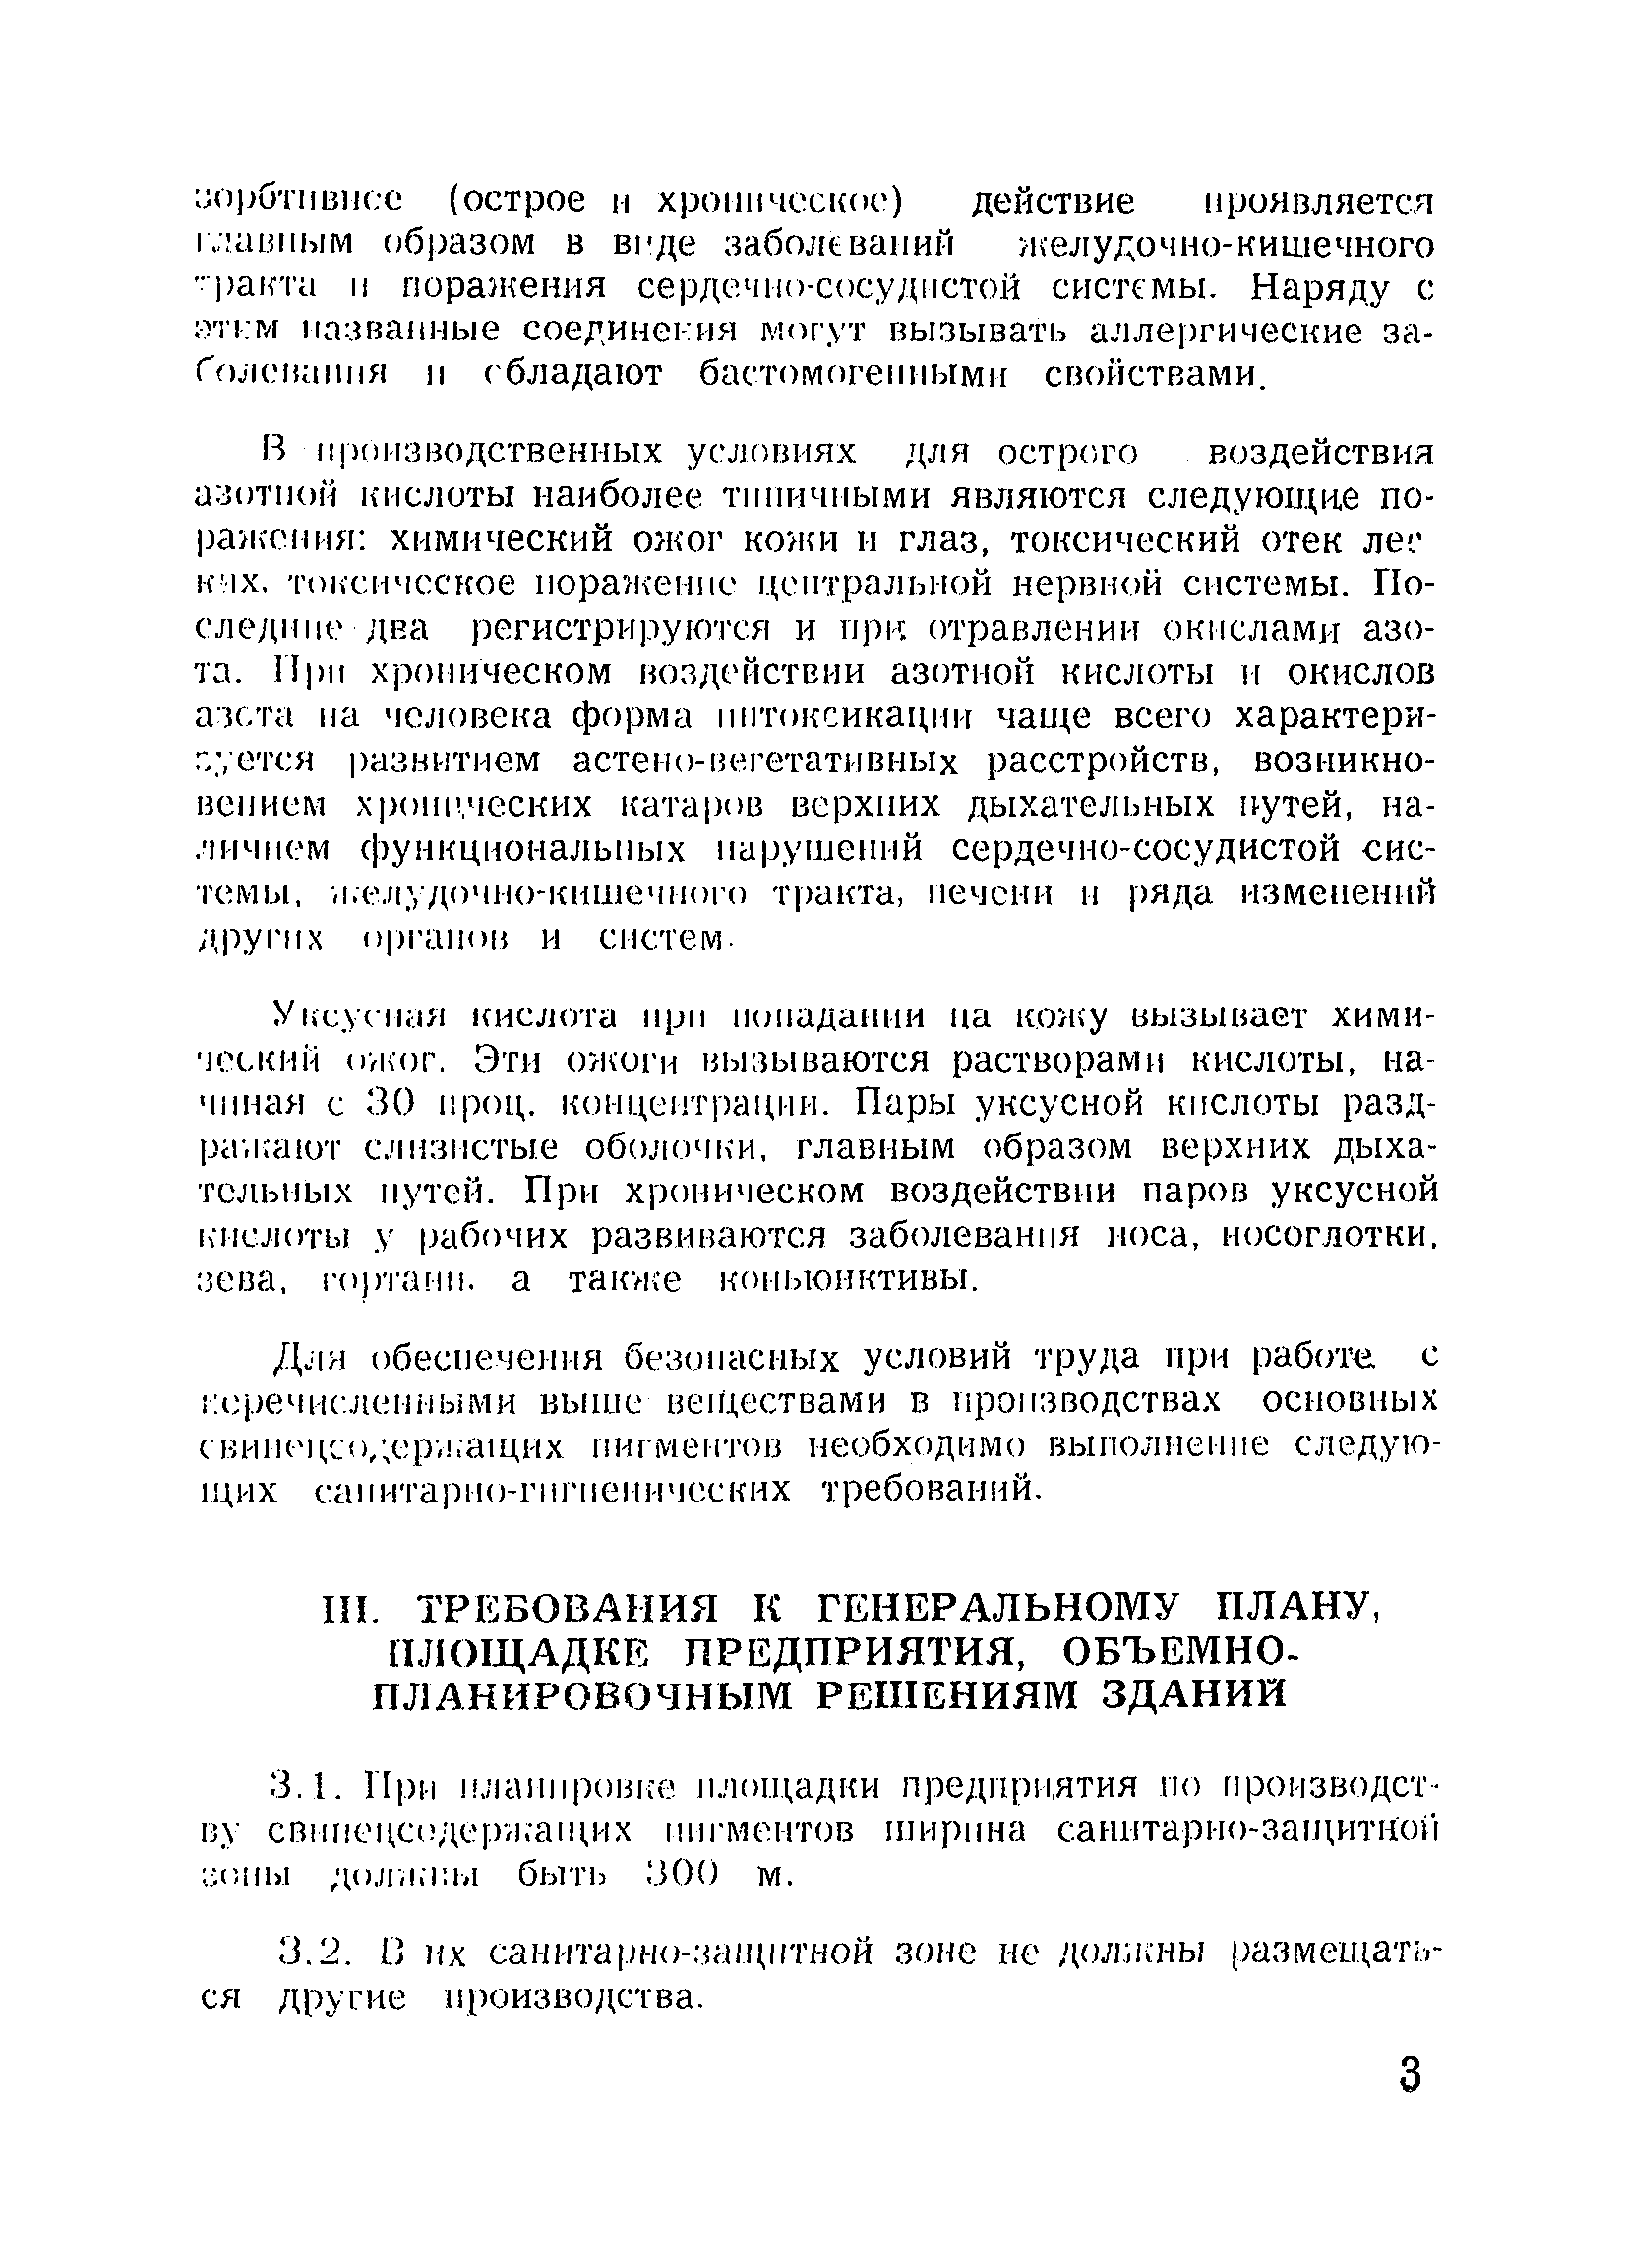 Санитарные правила 1983-79